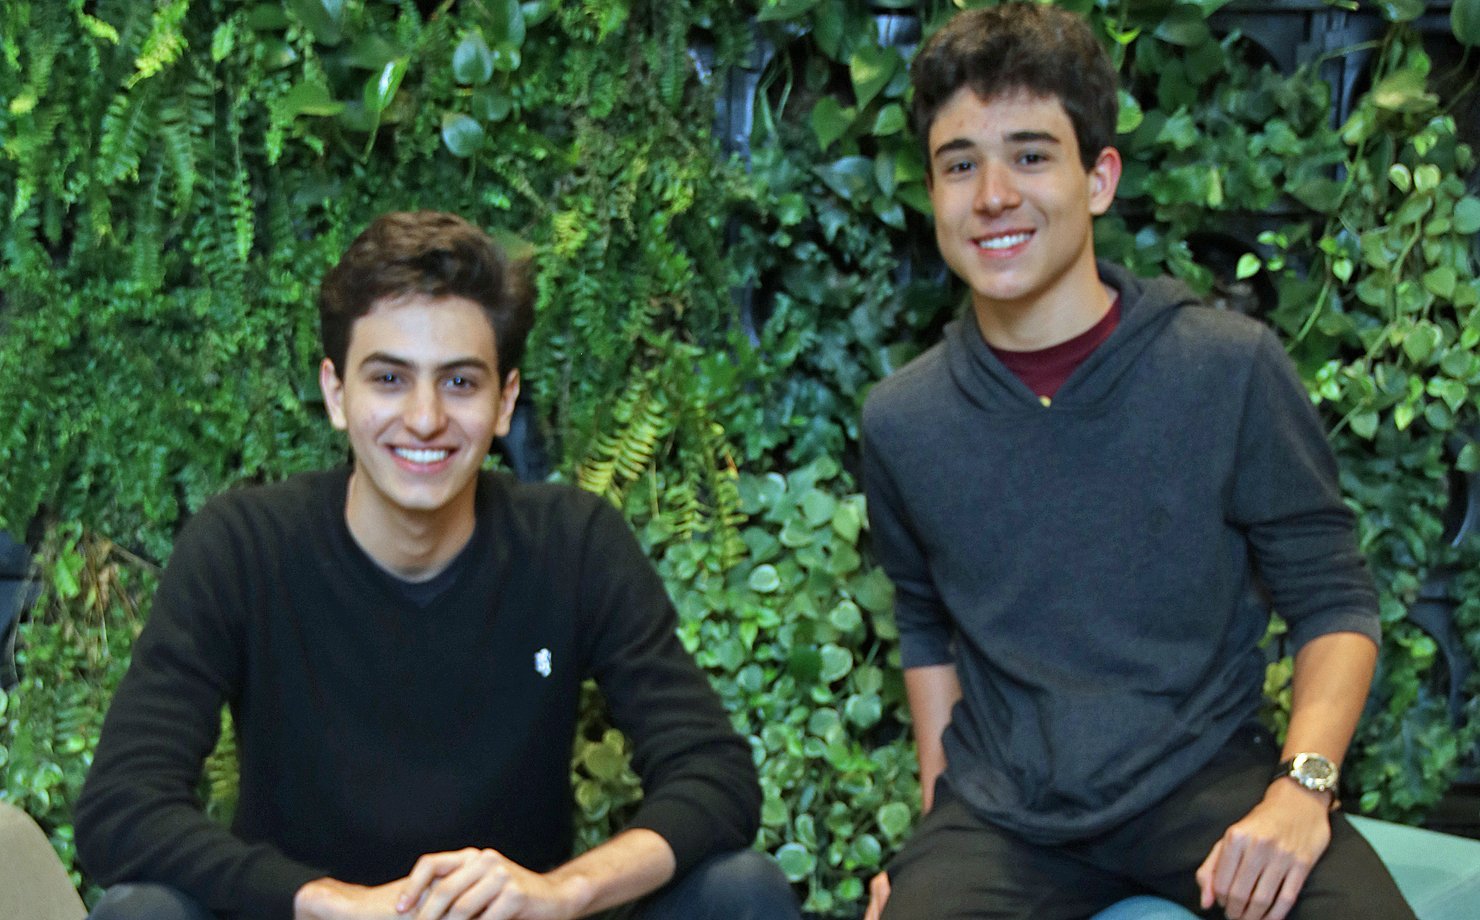 Rafael Válio, 17 anos, e Lucas Braz. 16 anos, coordenadores do Bandinvest, clube de investimentos do Colégio Bandeirantes